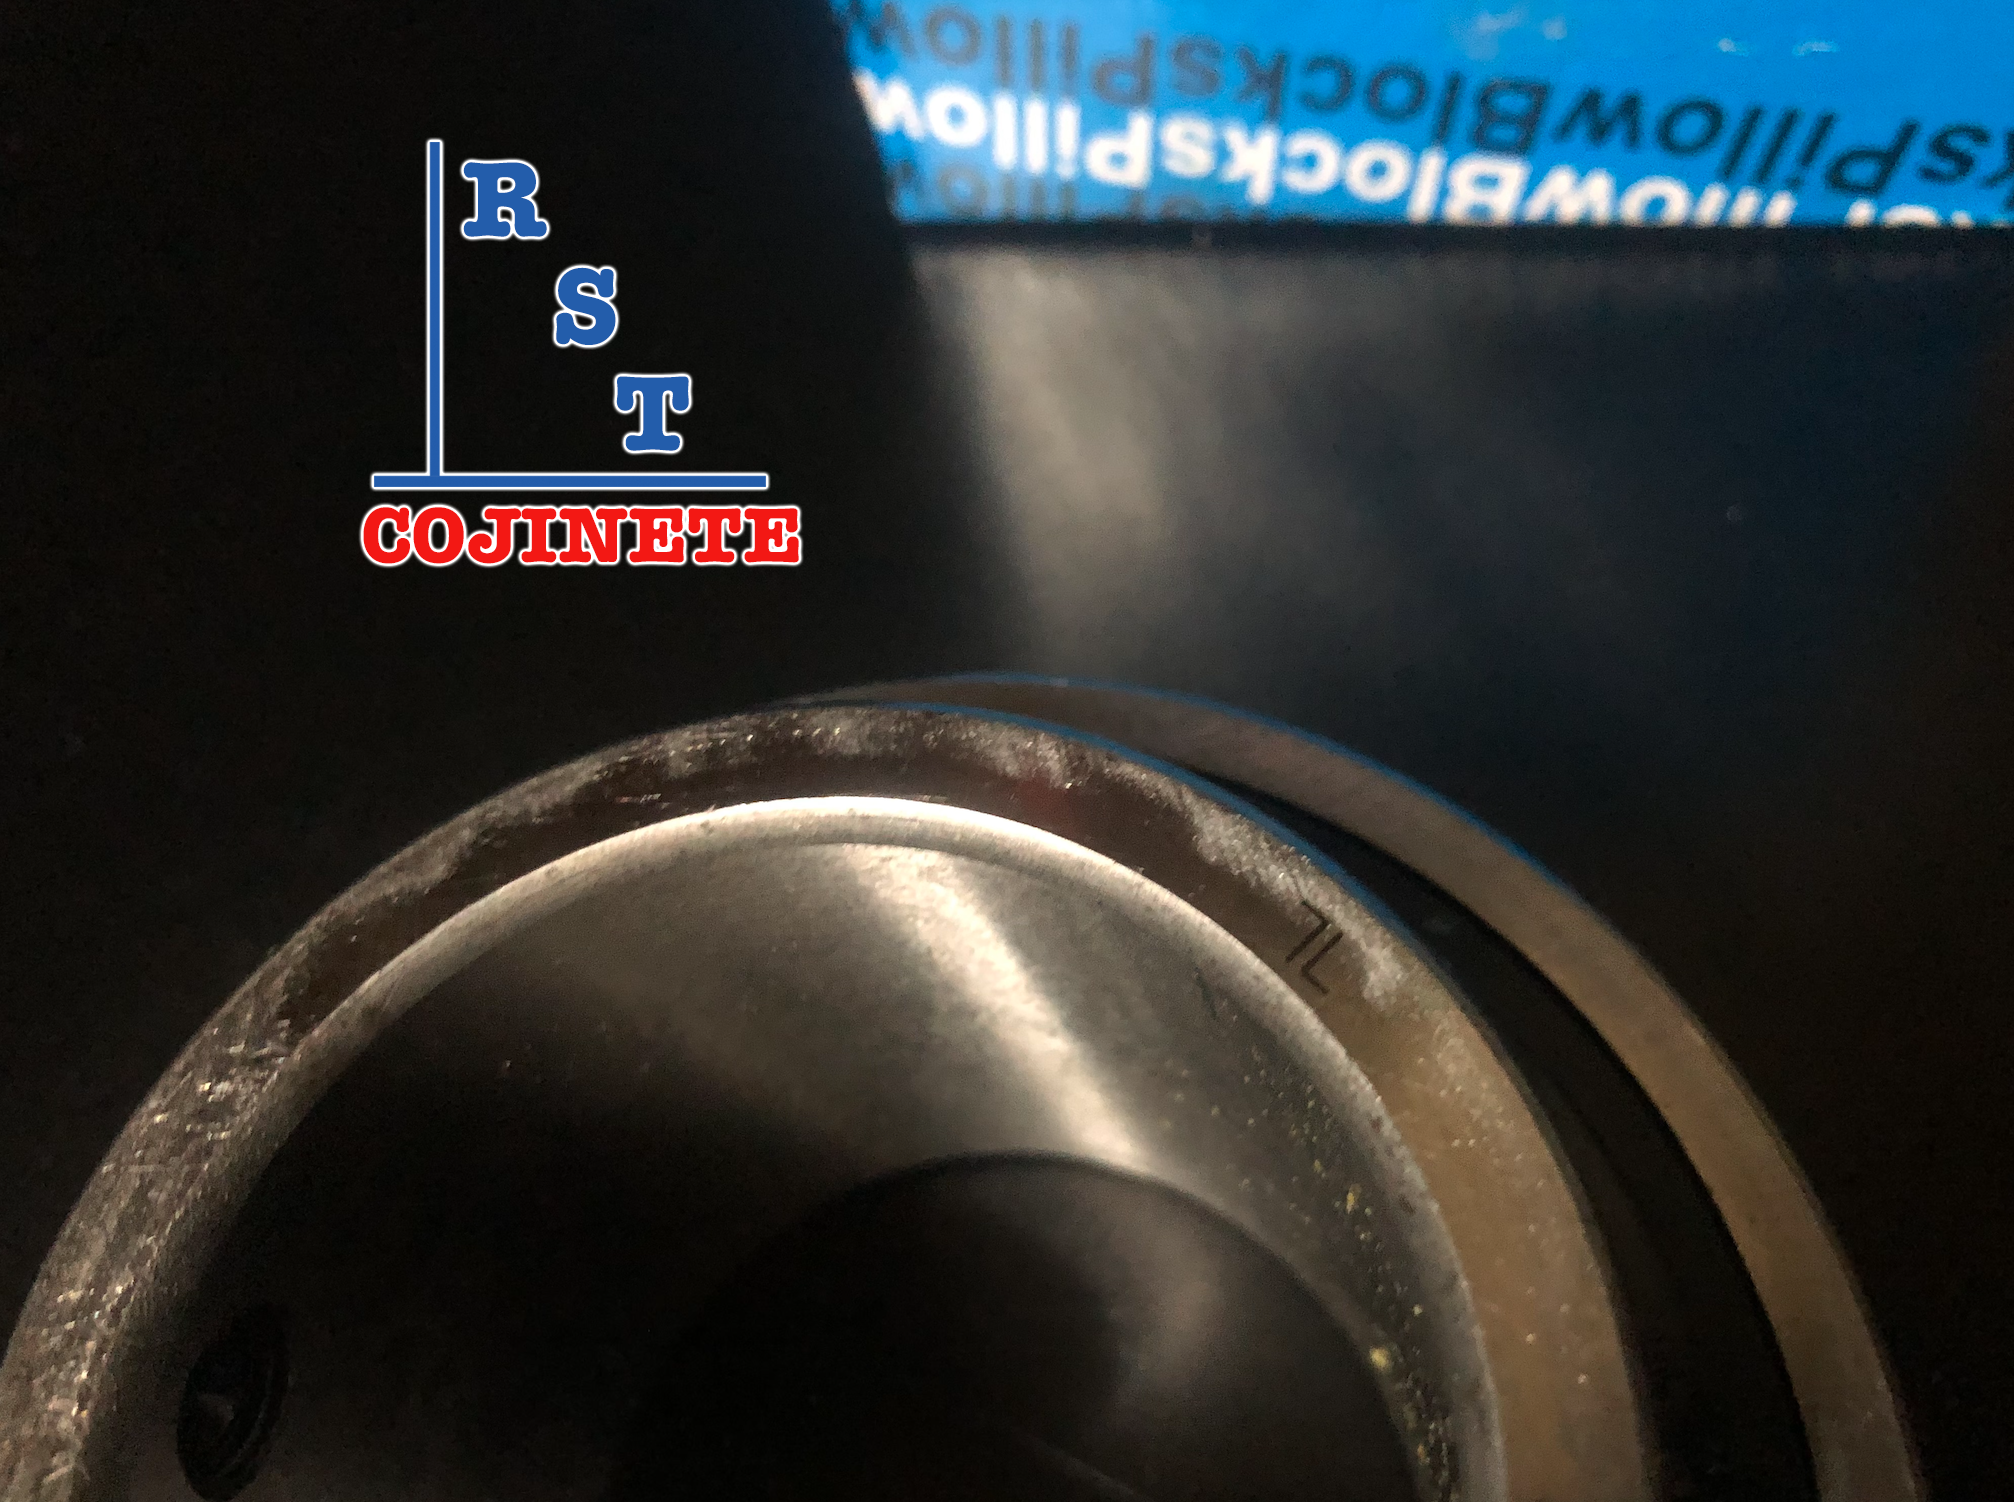 Cojinete insertable UC207-23 | Rodamiento para eje de 1-7/16" rígido de bolas con sello de hule para chumacera